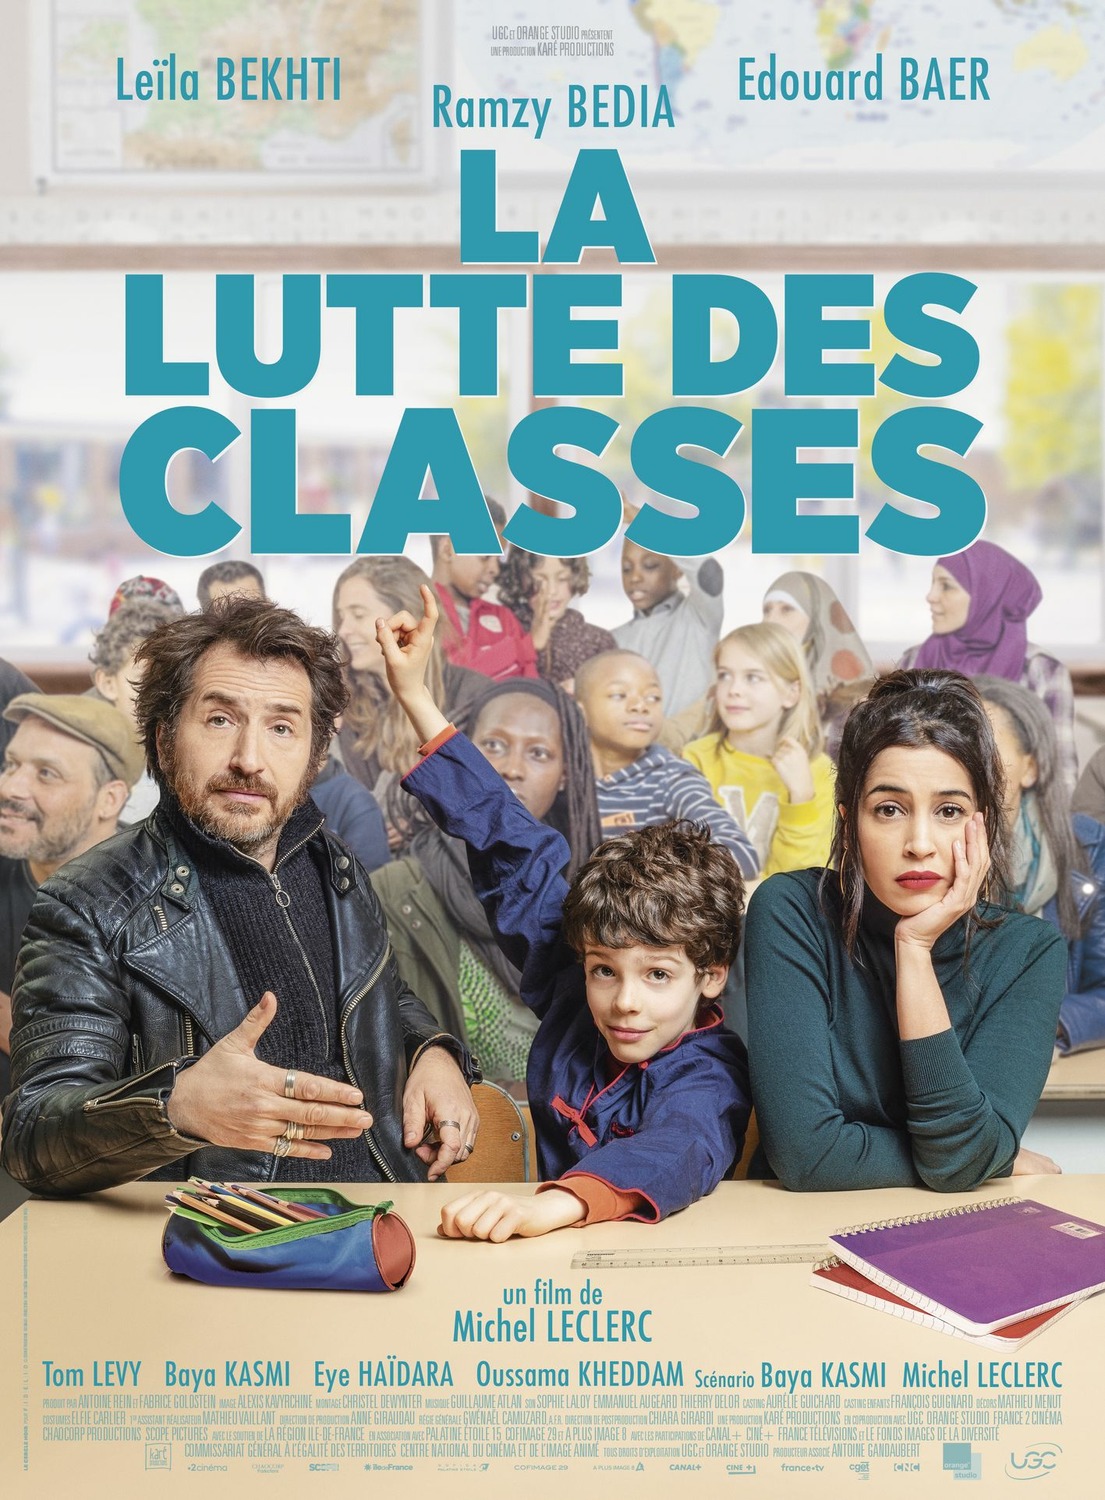 Extra Large Movie Poster Image for La lutte des classes 